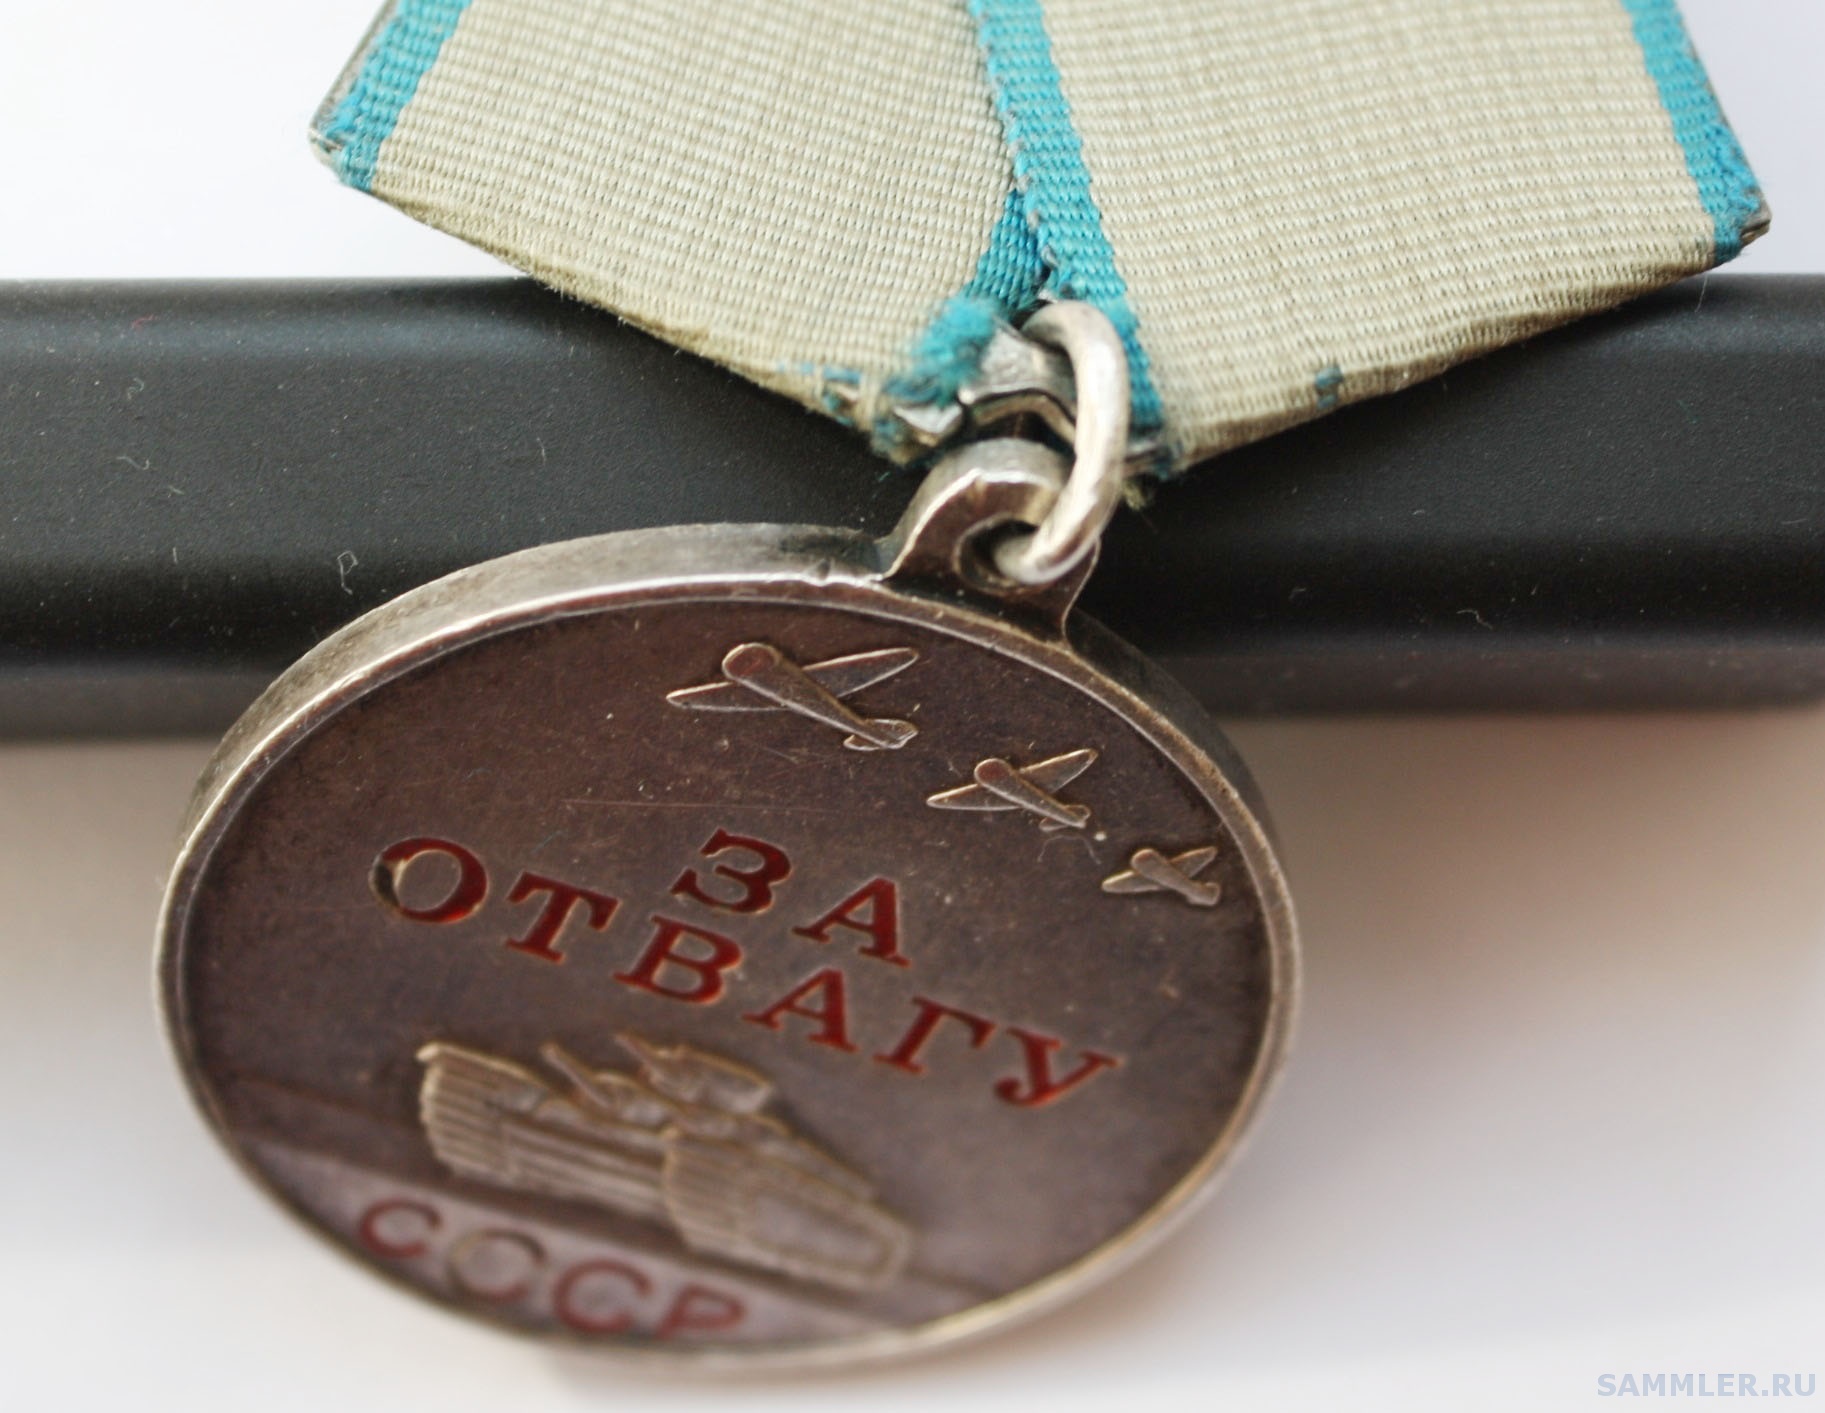 Отвага даль. Медаль за отвагу 1995 год. Медаль за отвагу 1995 год Чечня. Современная медаль за отвагу. Орден за отвагу Россия.